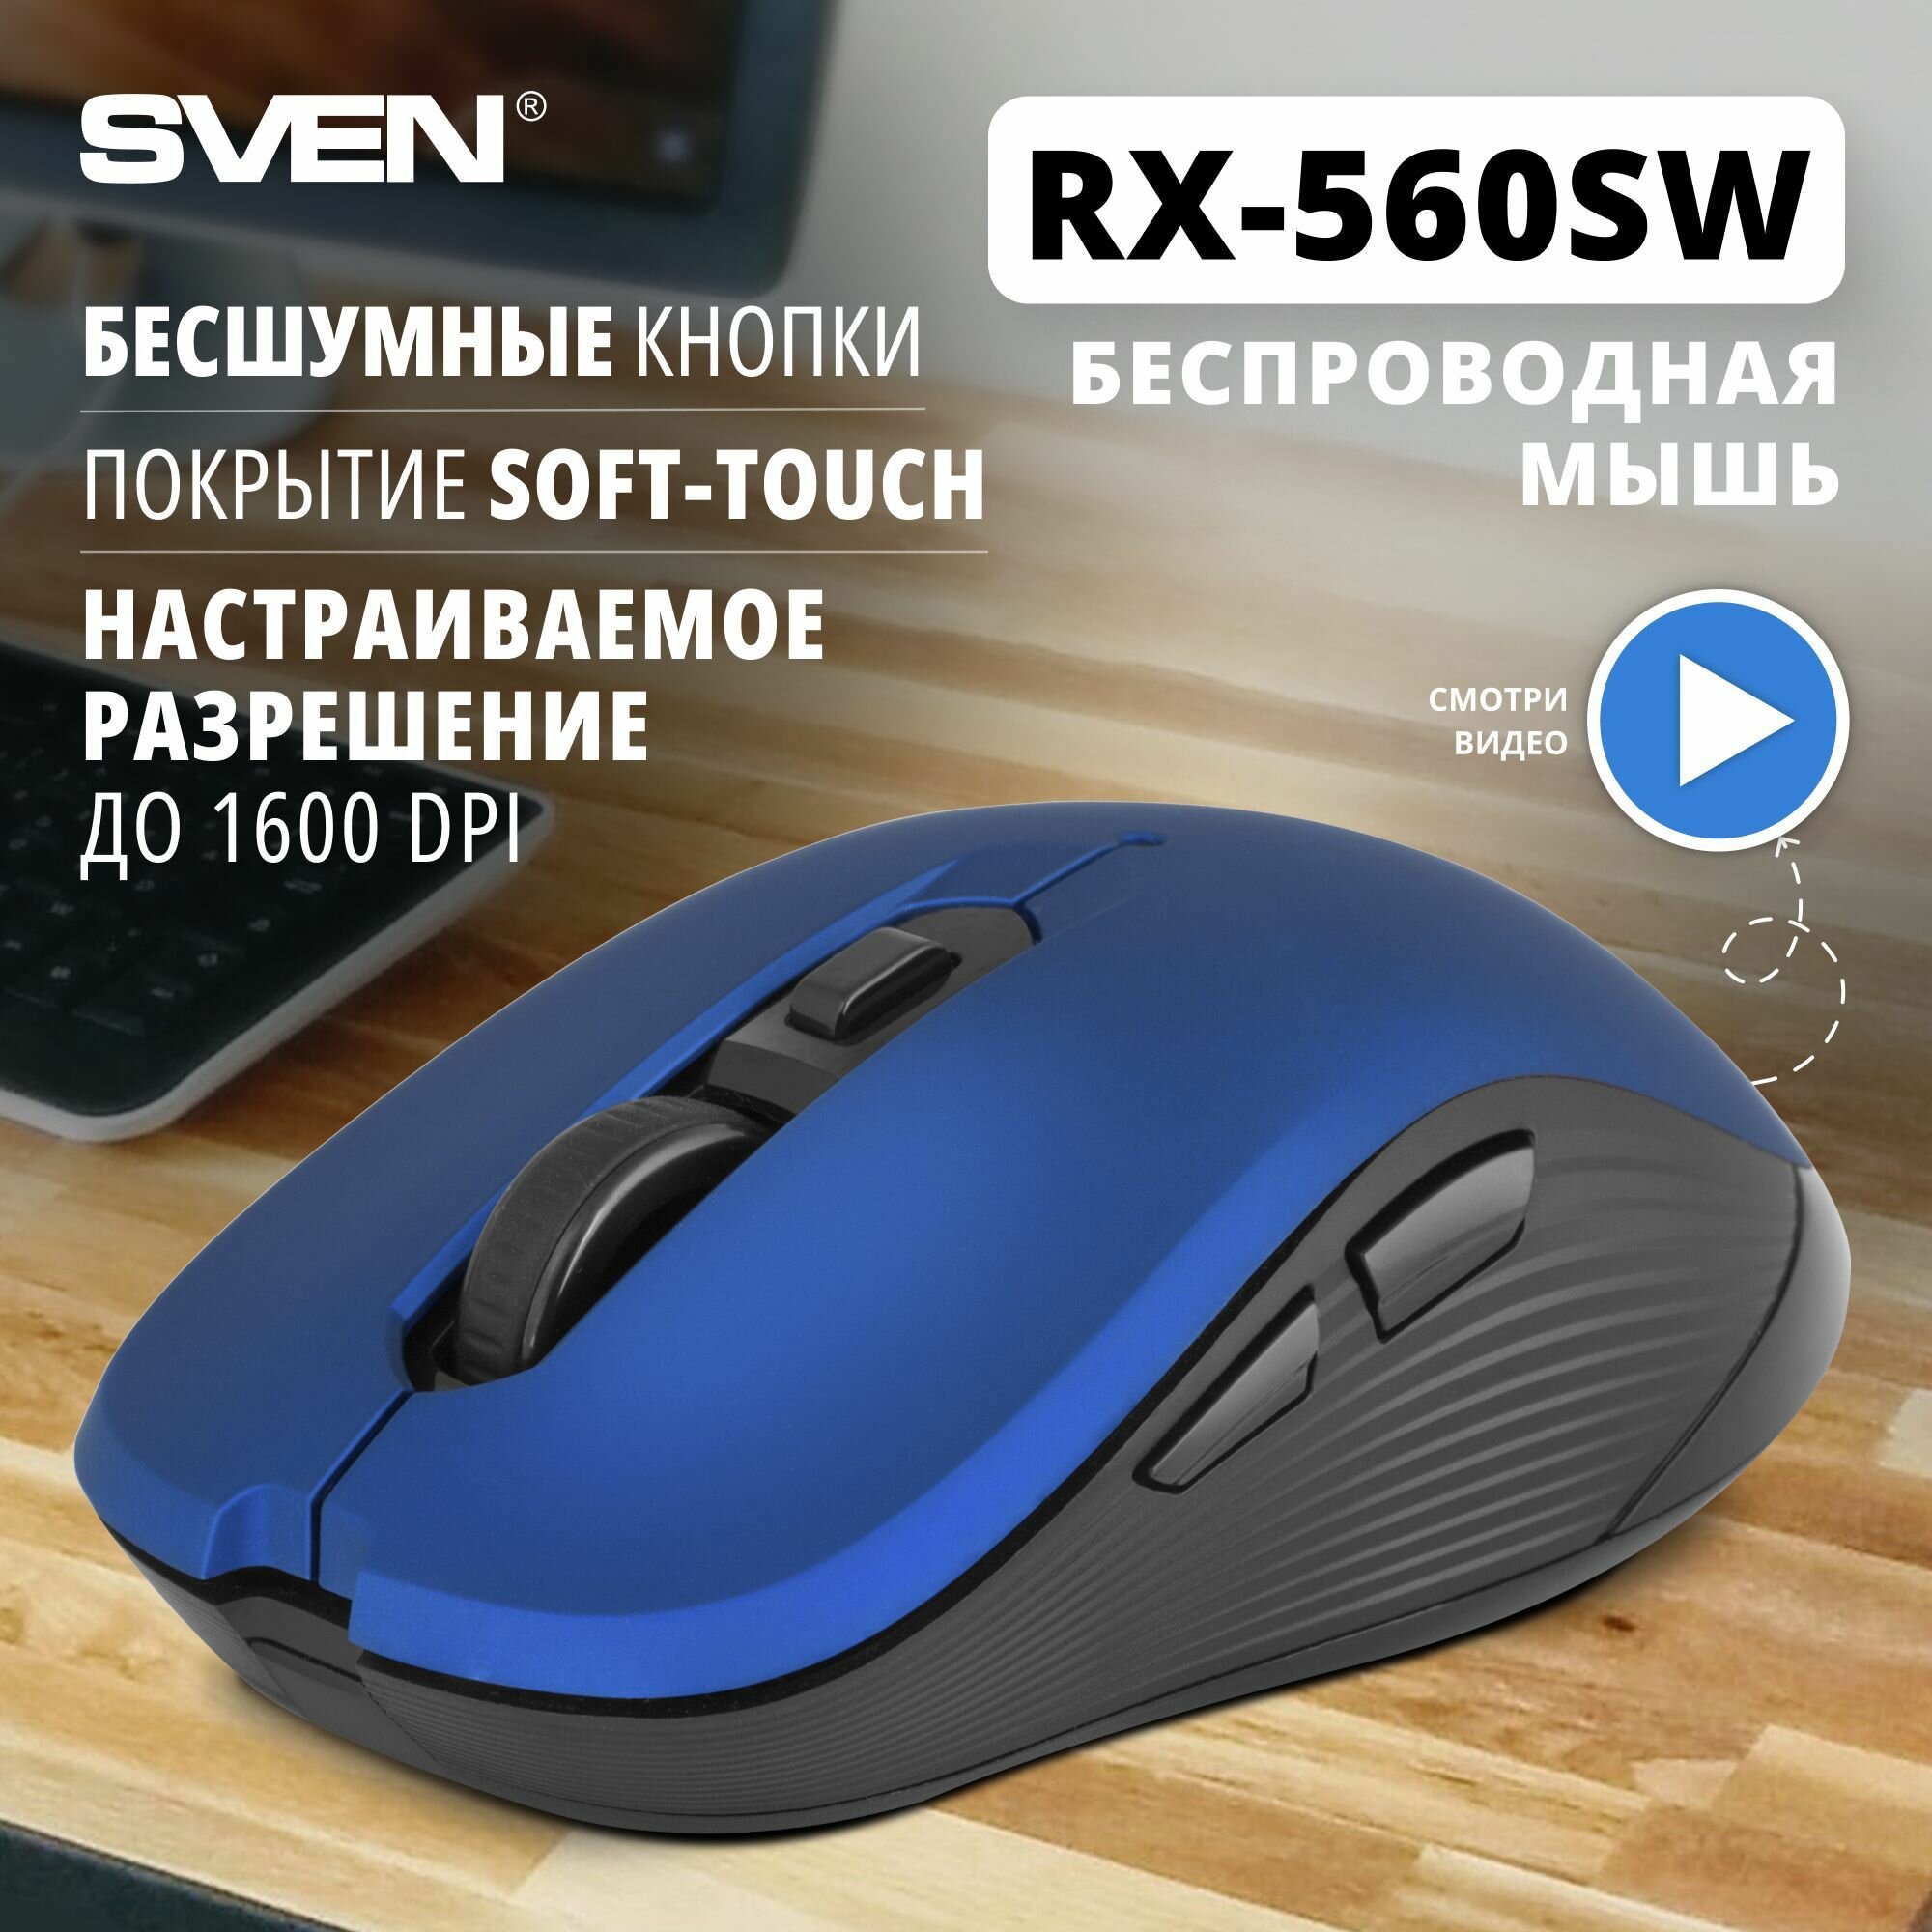 Беспроводная мышь RX-560SW синяя (бесшумн. кл.5+1кл. 800-1600DPI, Soft Touch, блист)